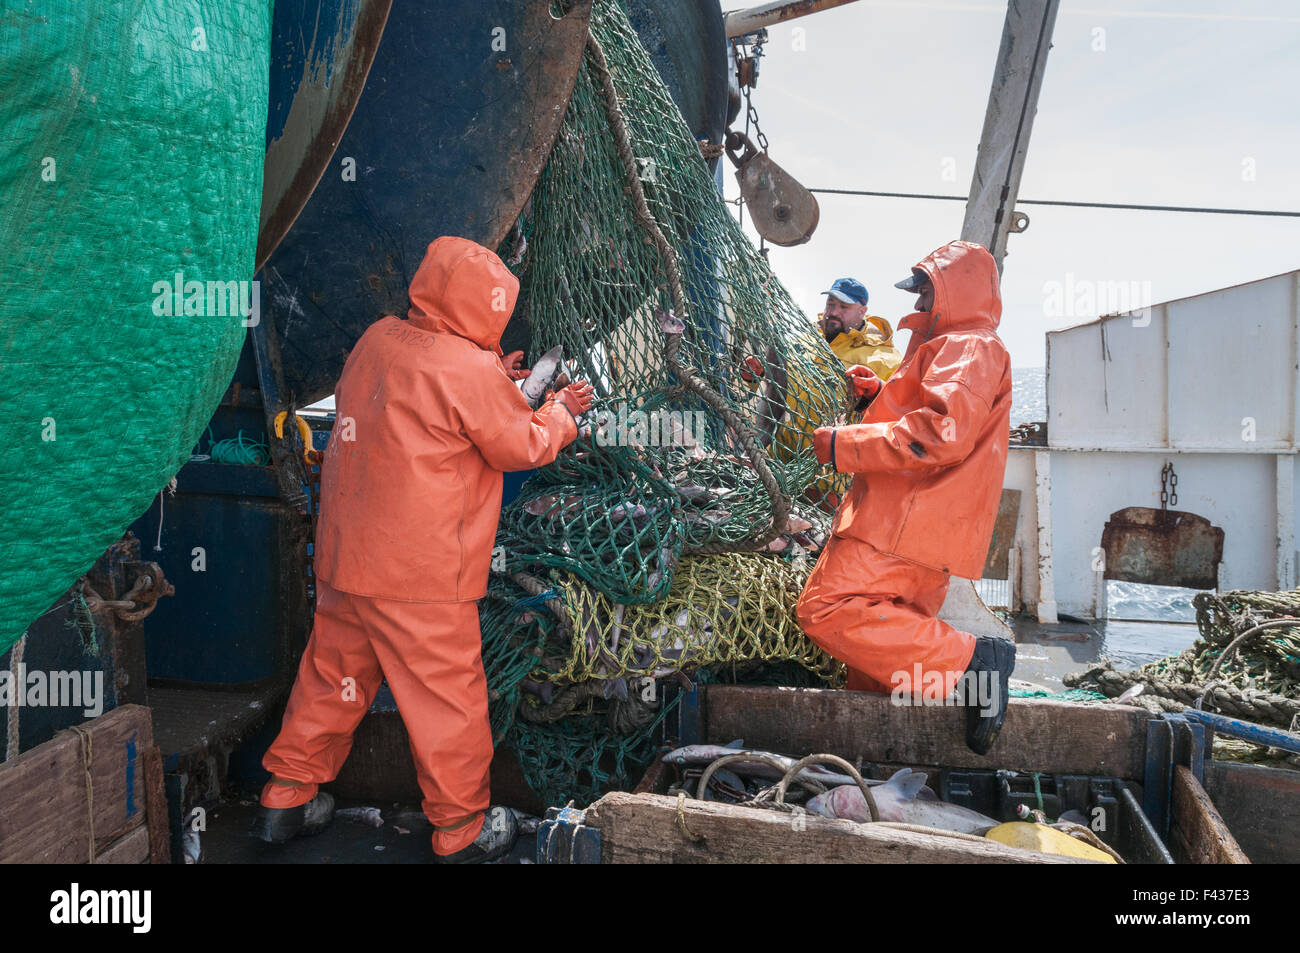 Pulizia del pesce fuori dragger/trawler net. Georges Bank, New England Foto Stock